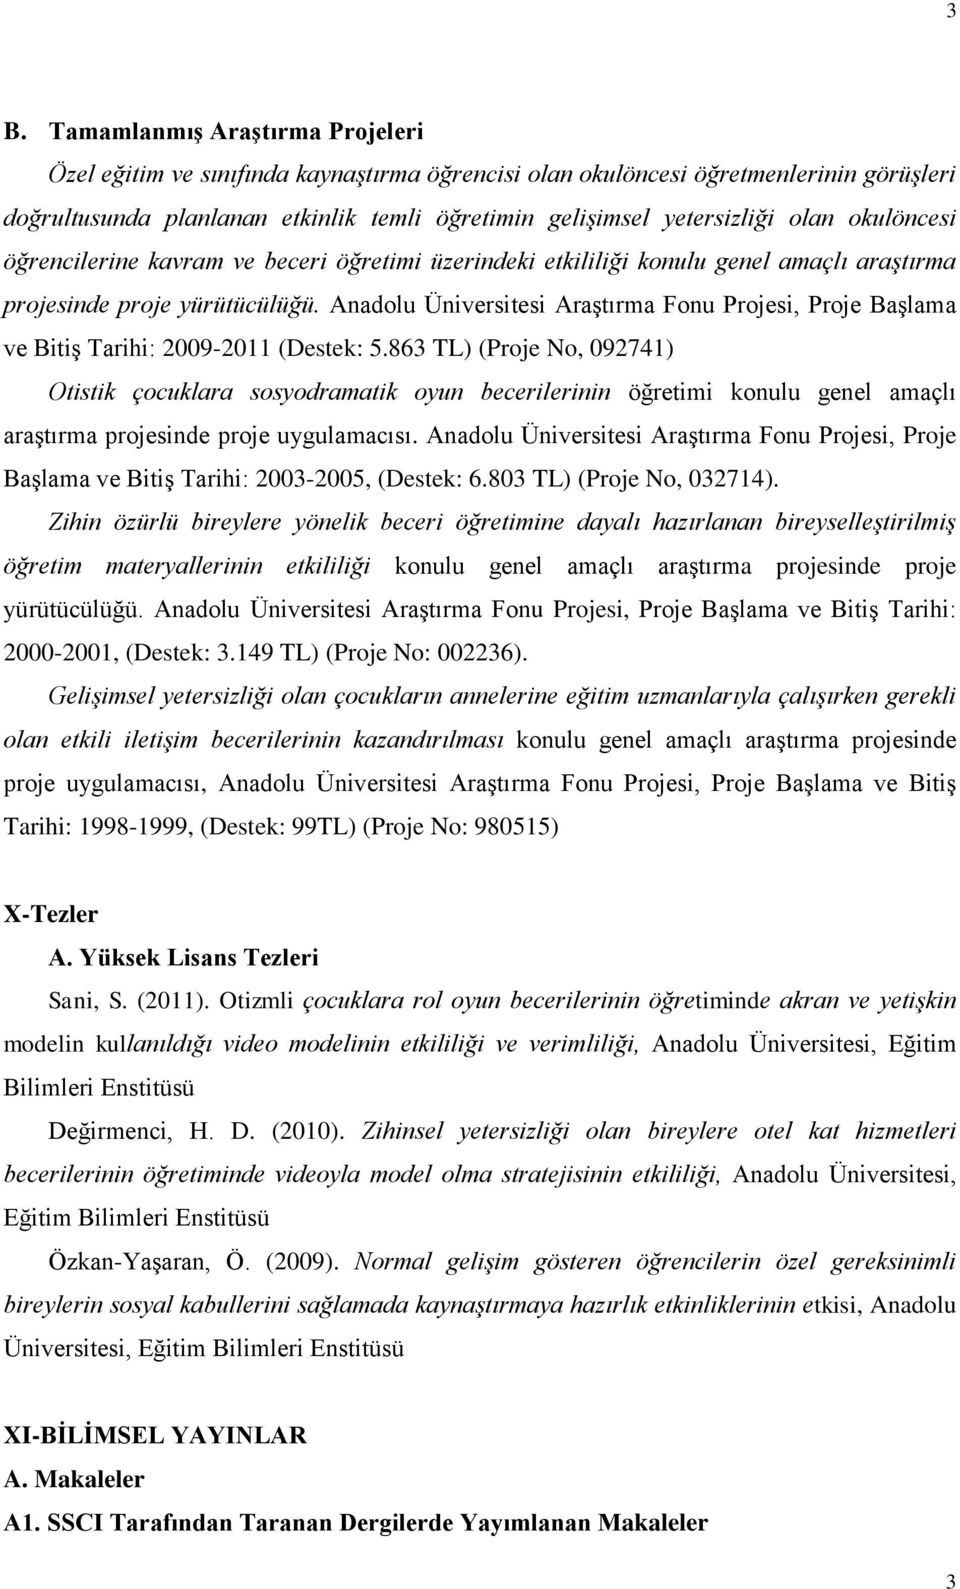 Anadolu Üniversitesi Araştırma Fonu Projesi, Proje Başlama ve Bitiş Tarihi: 2009-2011 (Destek: 5.